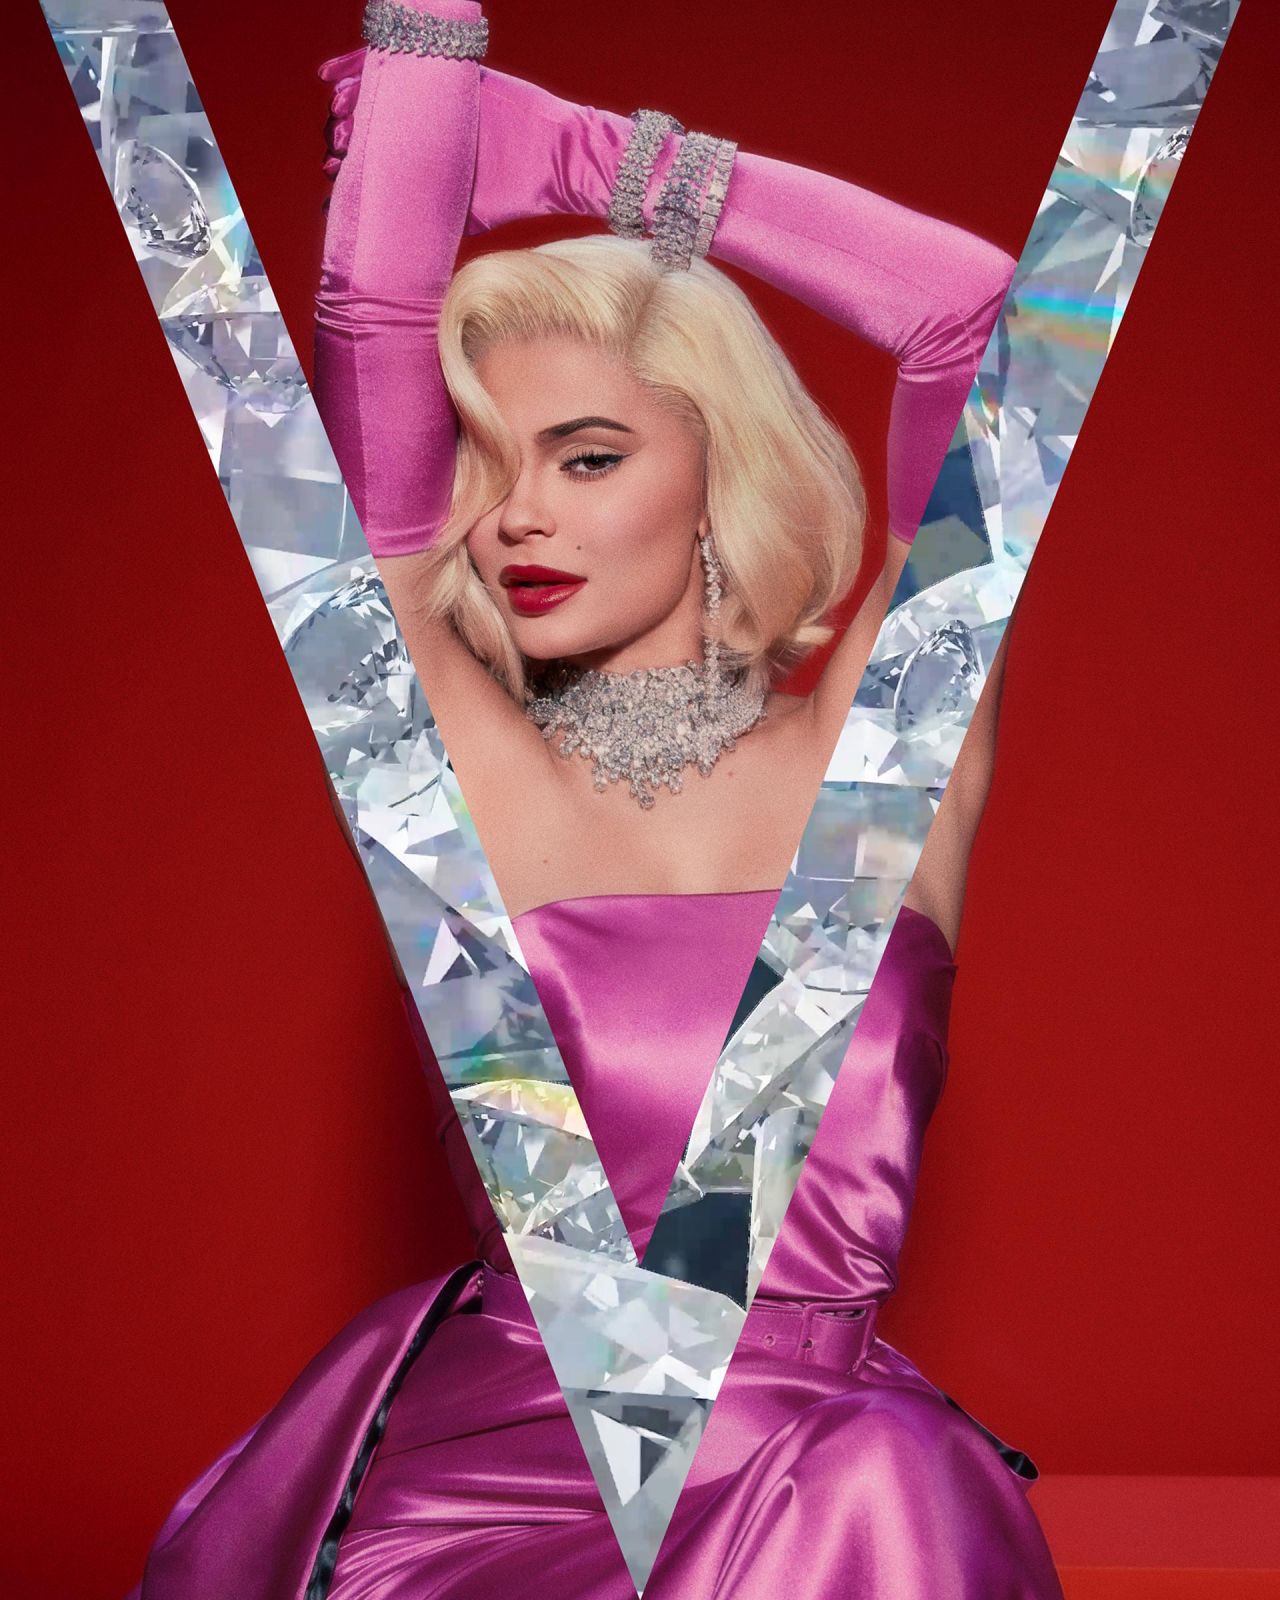 Kylie Jenner pose as Marilyn Monroe for V Magazine photoshoot